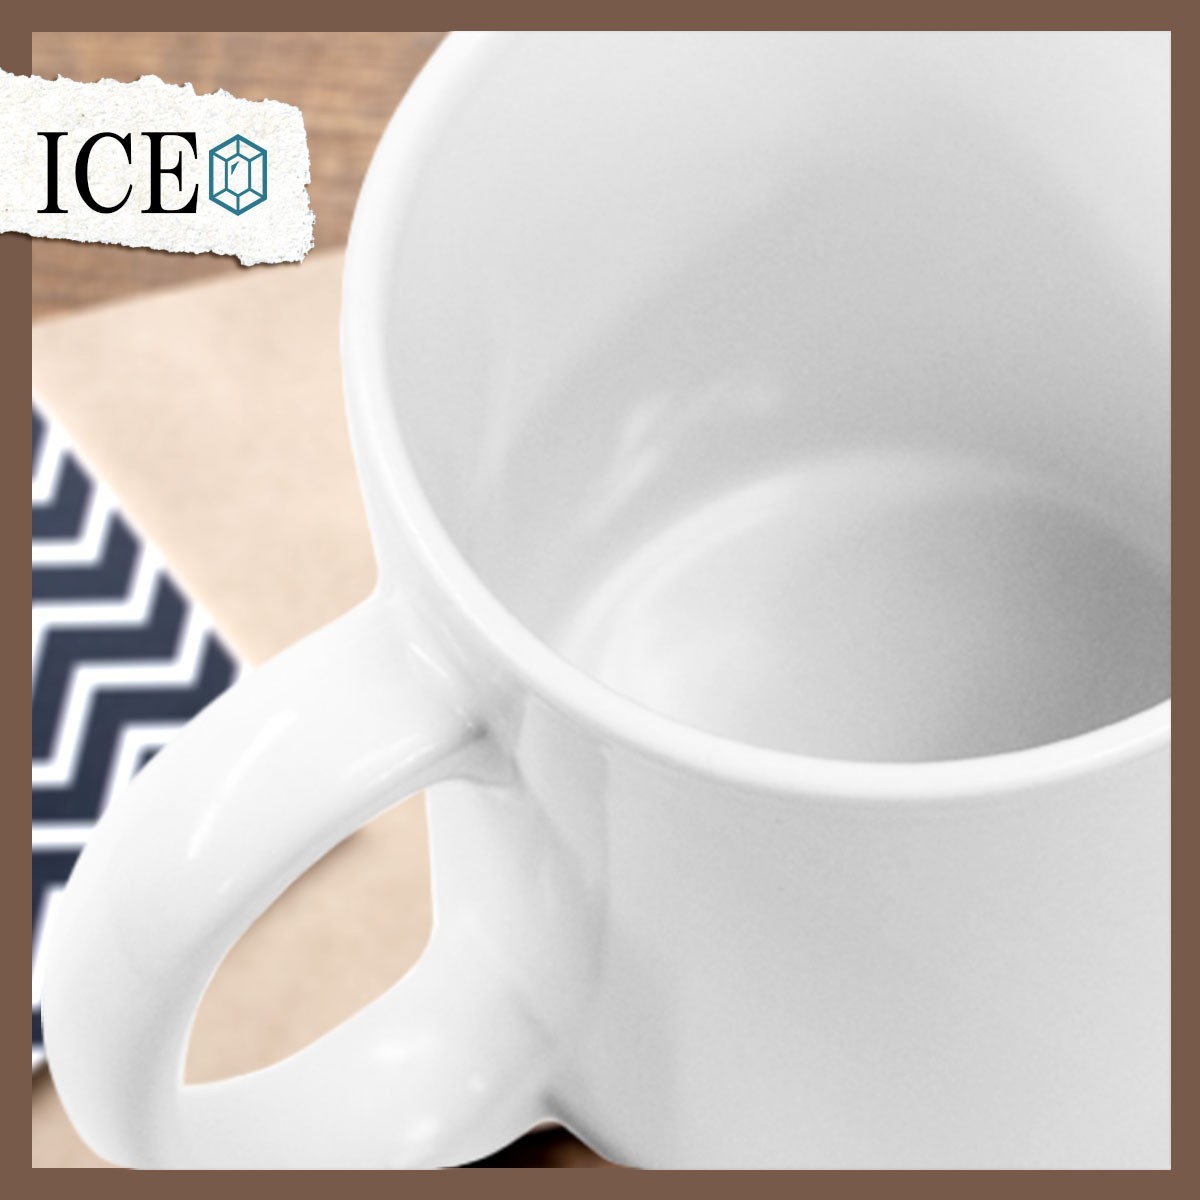 タヌキ 顔 おもしろ マグカップ コップ 陶器 可愛い かわいい 白 シンプル かわいい カッコイイ シュール 面白い ジョーク ゆるい プレゼン_画像5